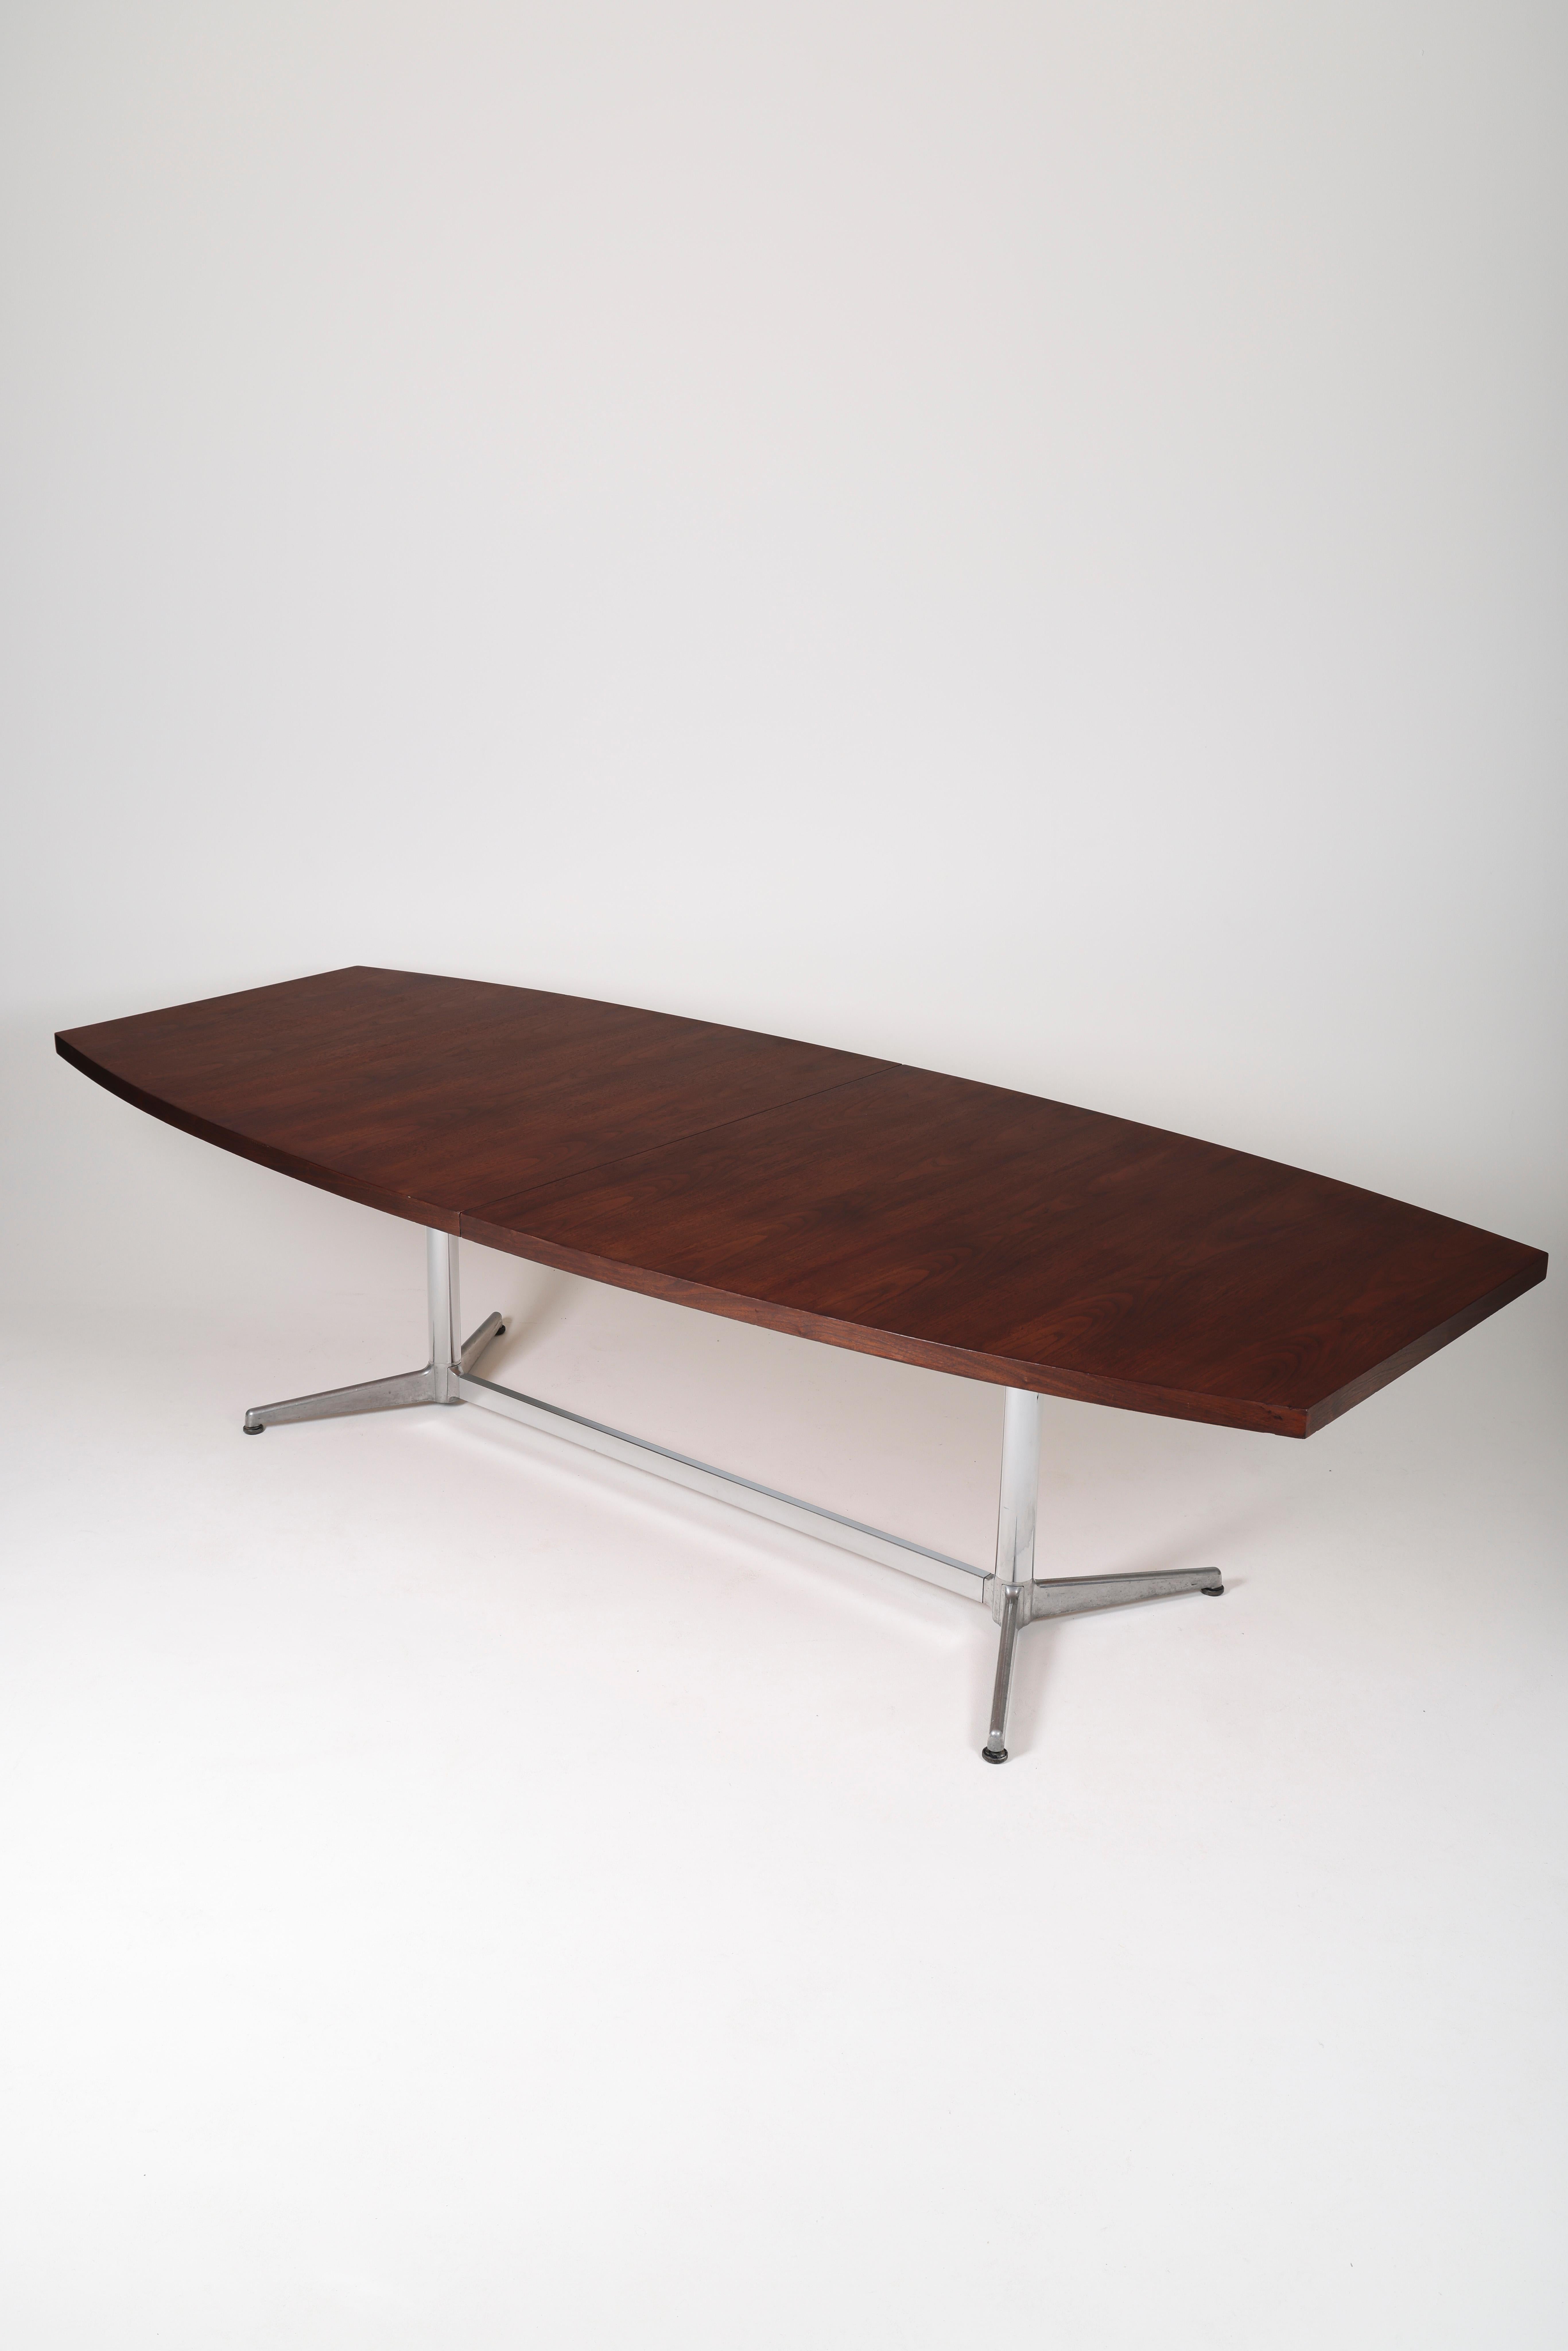 Großer Konferenz- oder Esstisch aus Palisanderholz des italienischen Designers Giancarlo Piretti, 1970er Jahre. Holztisch mit Metallbeinen. Sehr guter Zustand.
LP925